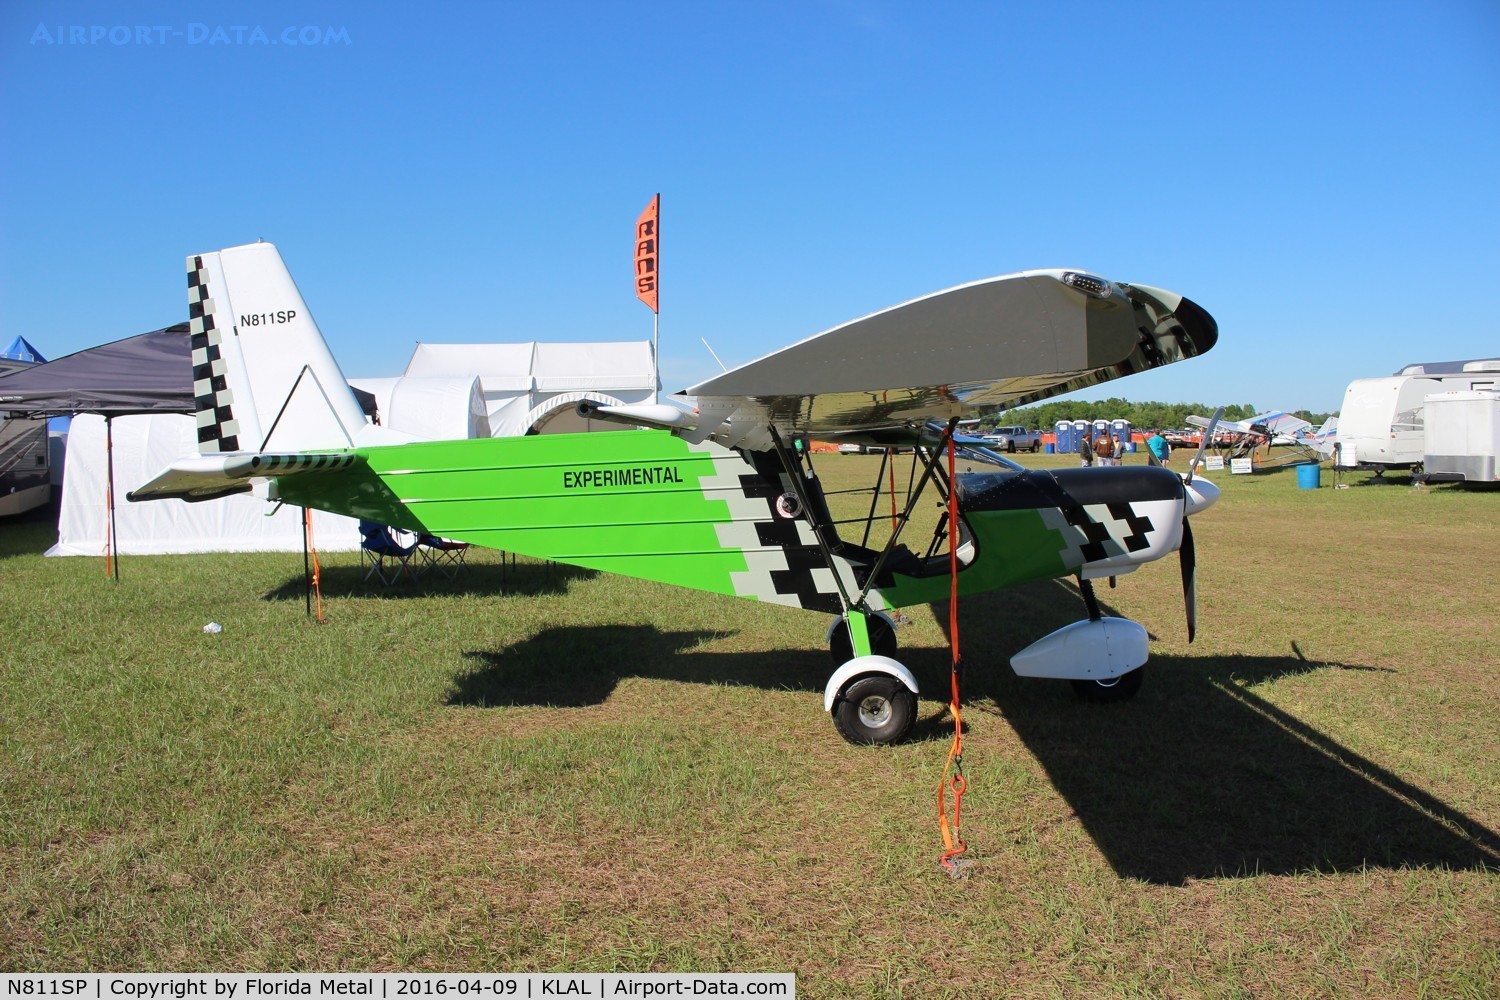 N811SP, 2015 Spectr-Aero SP-30 C/N 154, SP-30